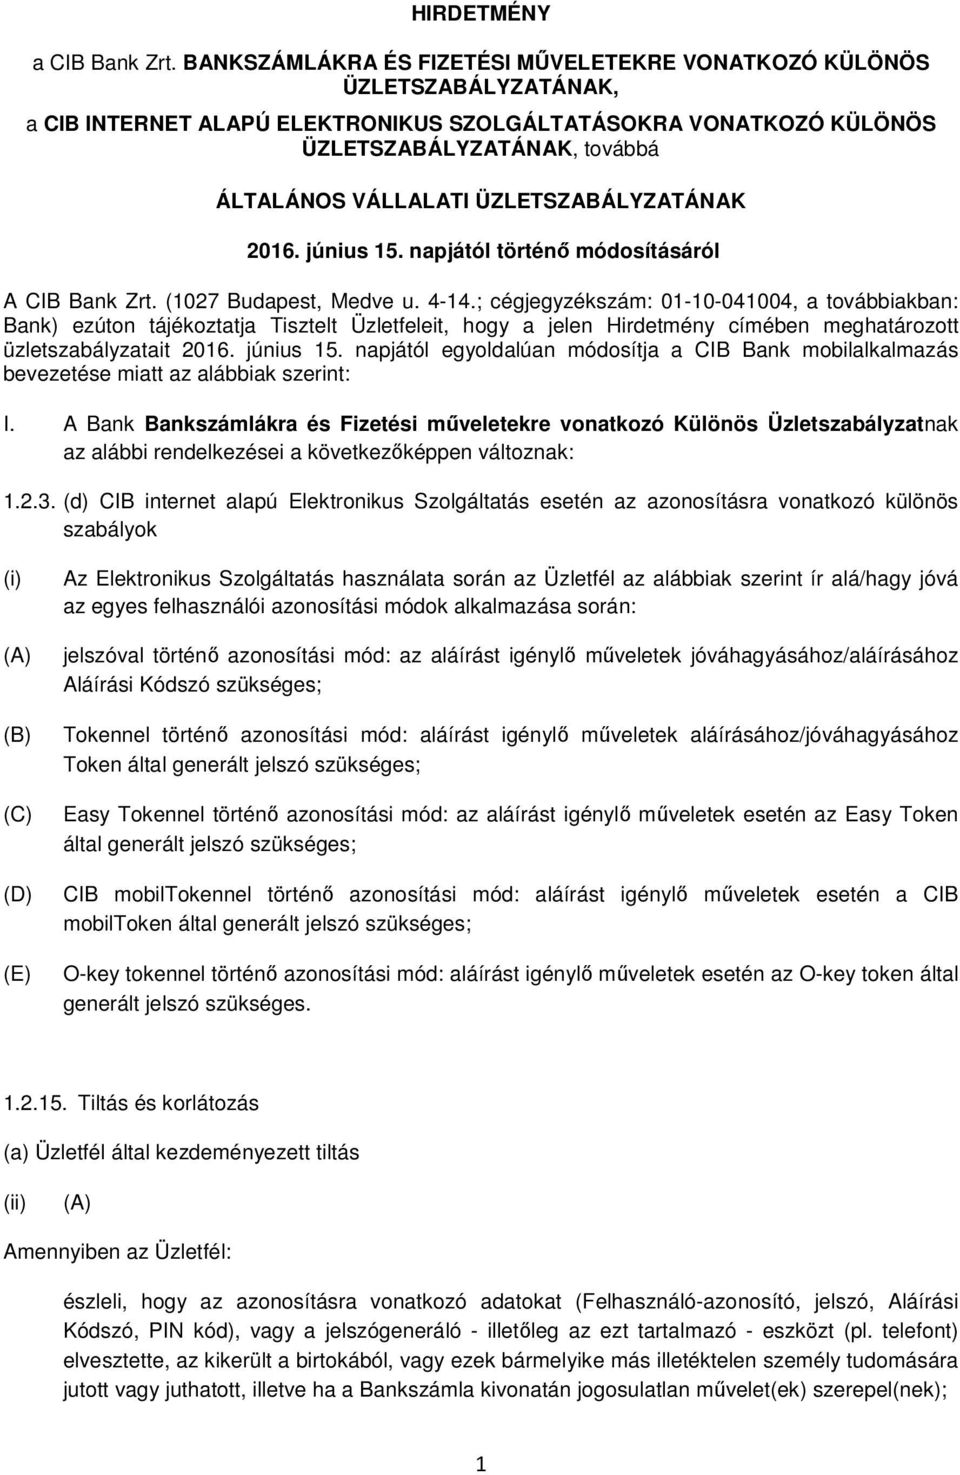 ÜZLETSZABÁLYZATÁNAK 2016. június 15. napjától történő módosításáról A CIB Bank Zrt. (1027 Budapest, Medve u. 4-14.